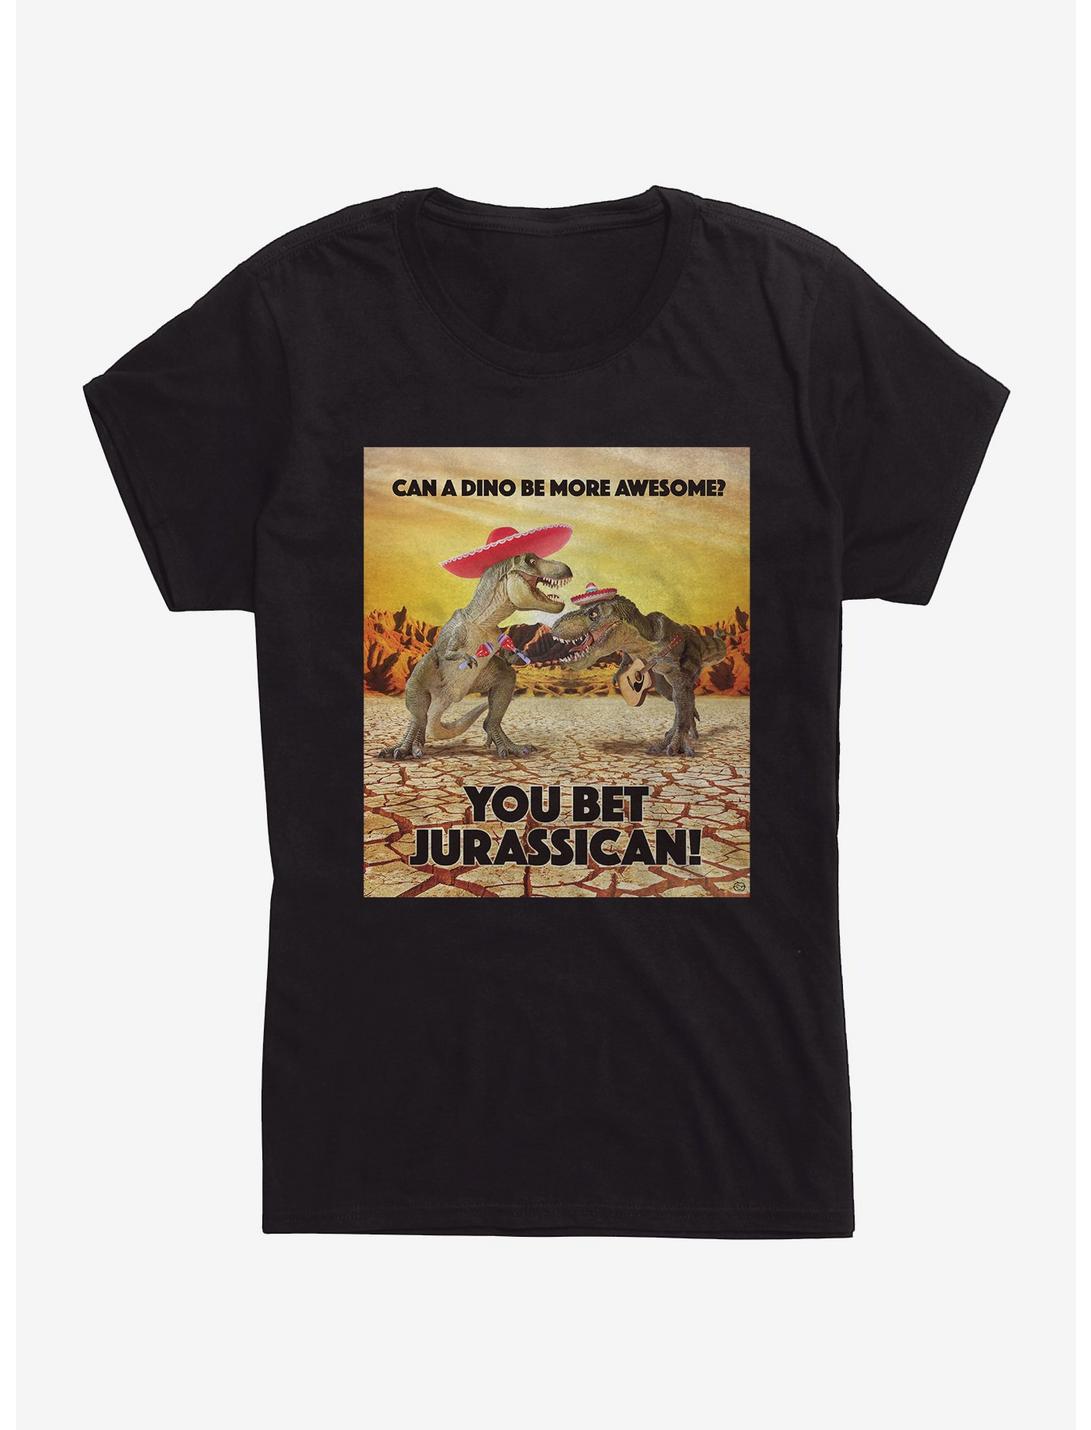 You Bet Jurassican Womens T-Shirt, BLACK, hi-res